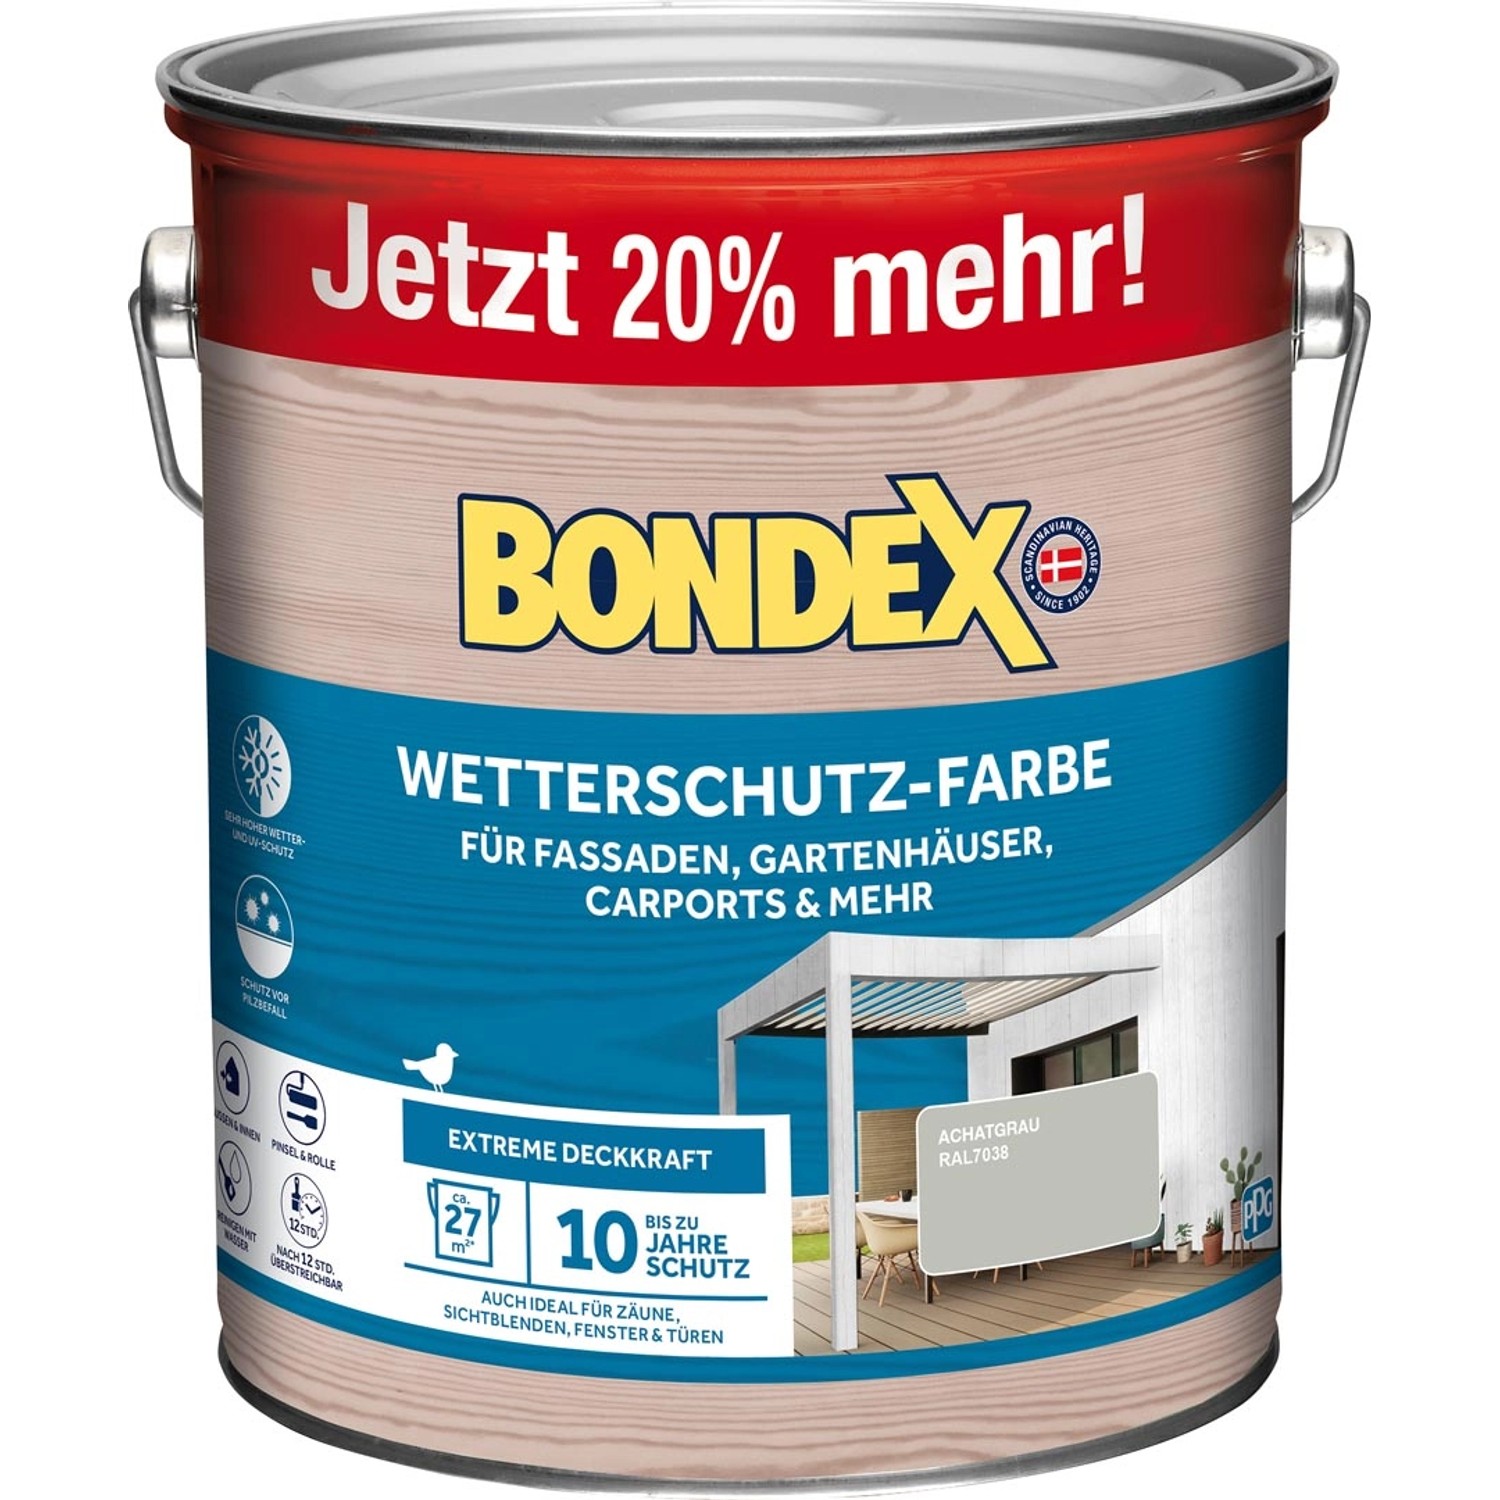 Bondex Wetterschutz-Farbe RAL 7038 Achatgrau - 3 l ausreichend für ca. 27 m²